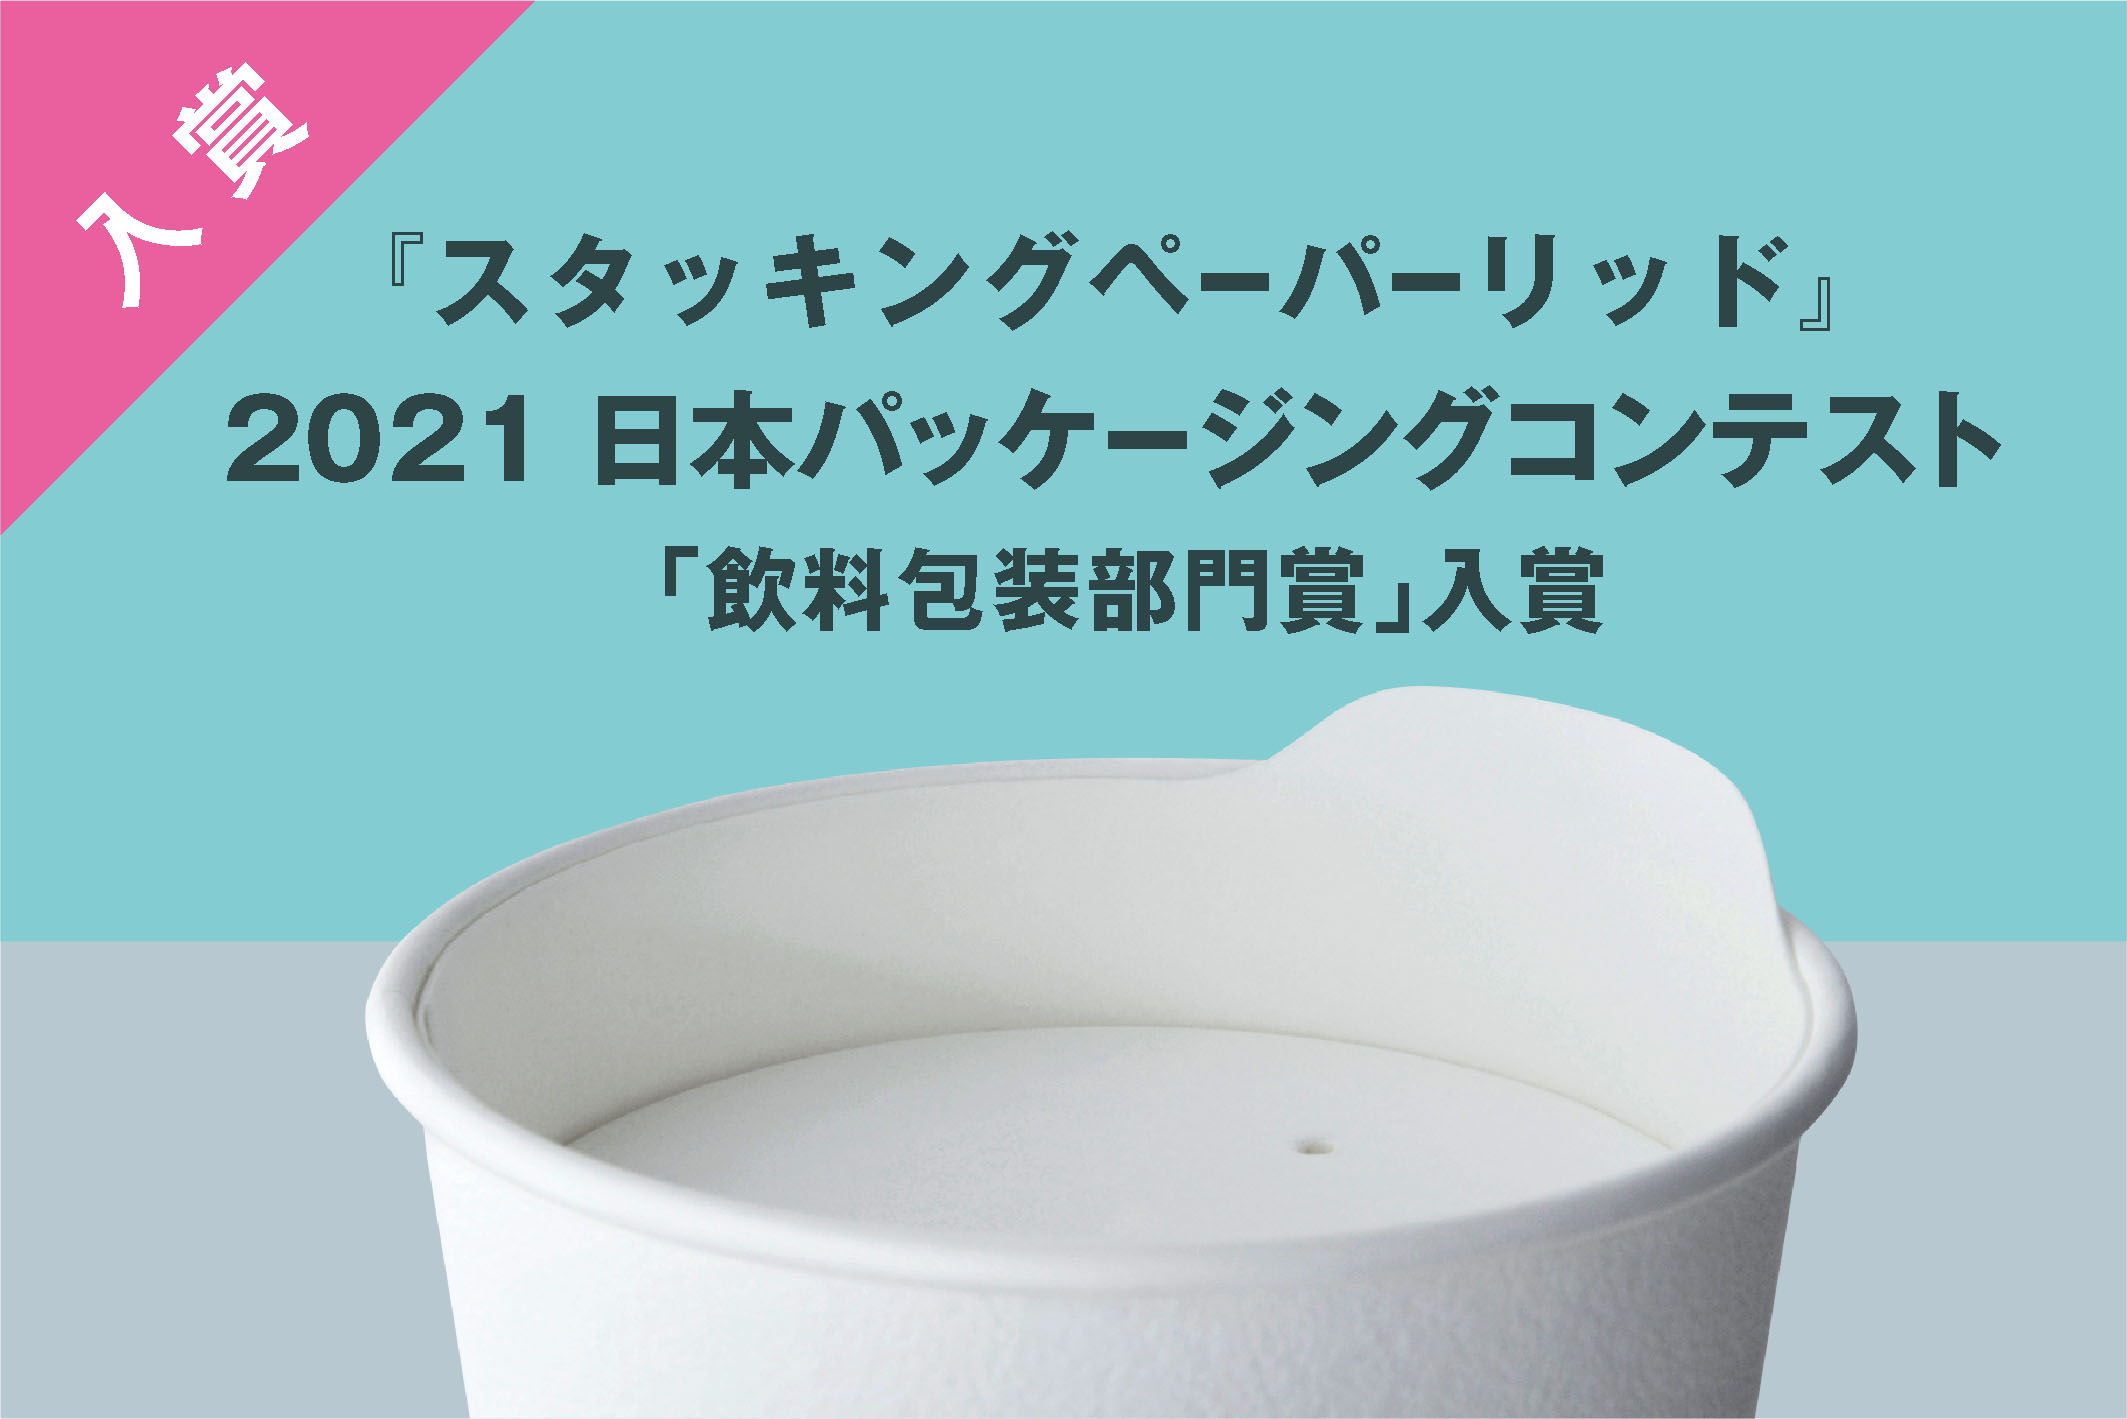  2021 日本パッケージングコンテスト「飲料包装部門」入賞 